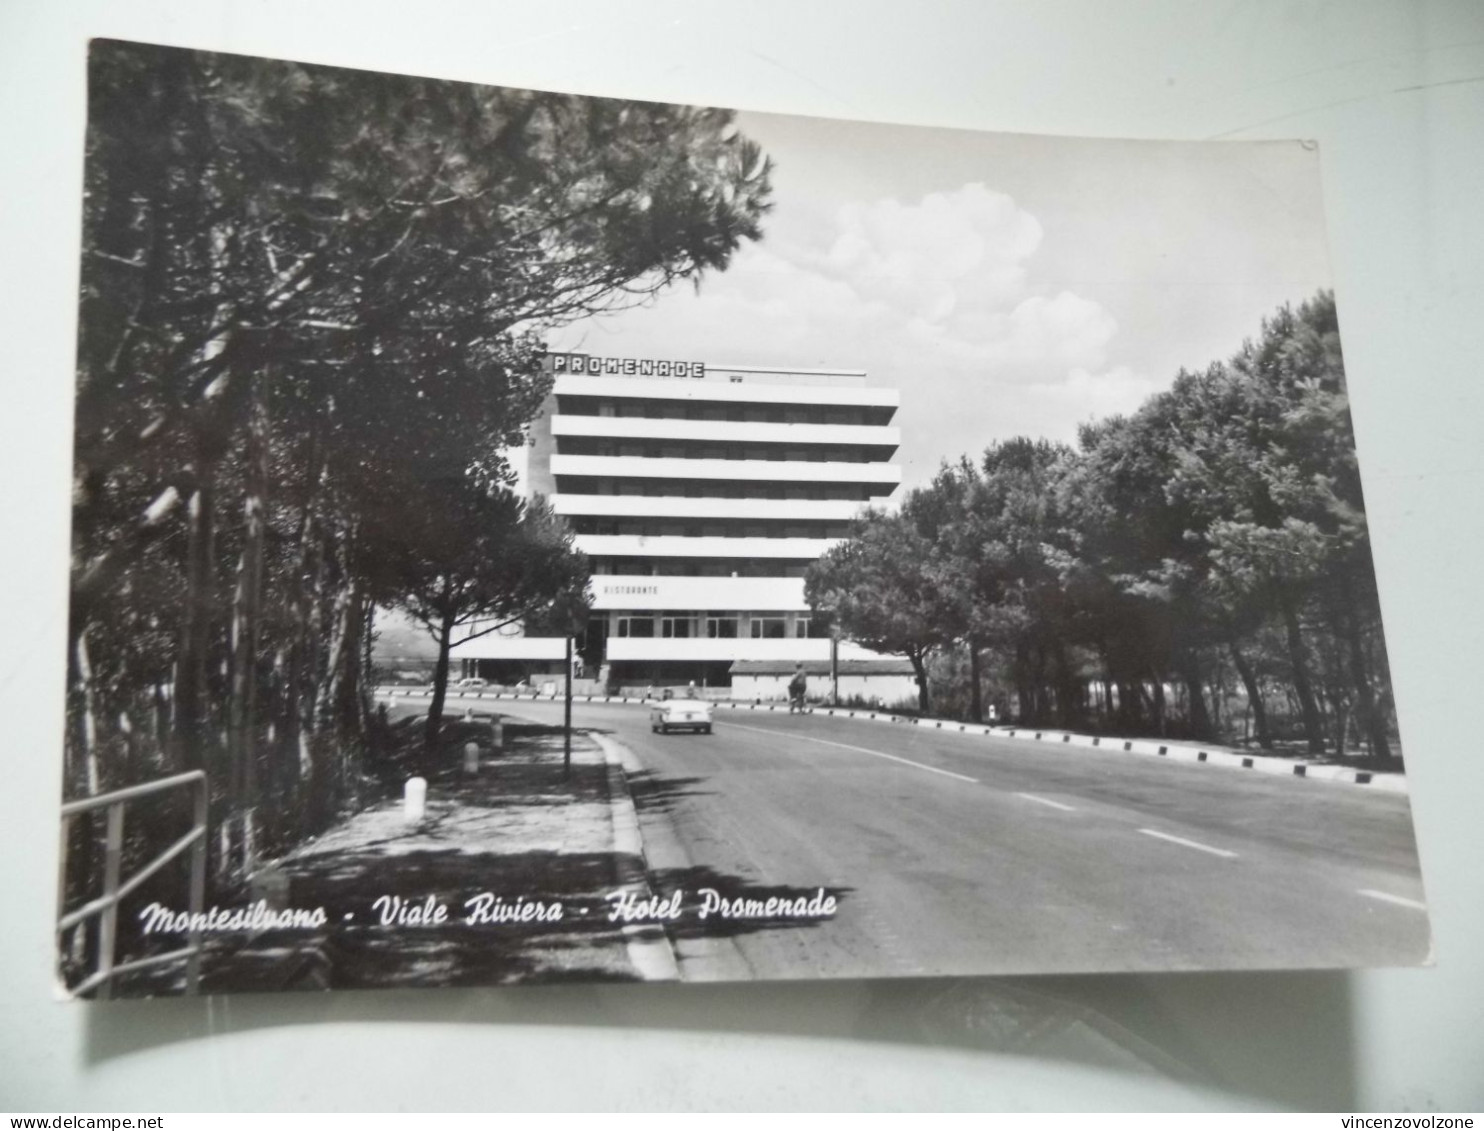 Cartolina Viaggiata "MONTESILVANO Viale Riviera - Hotel Promenade"  1963 - Alberghi & Ristoranti